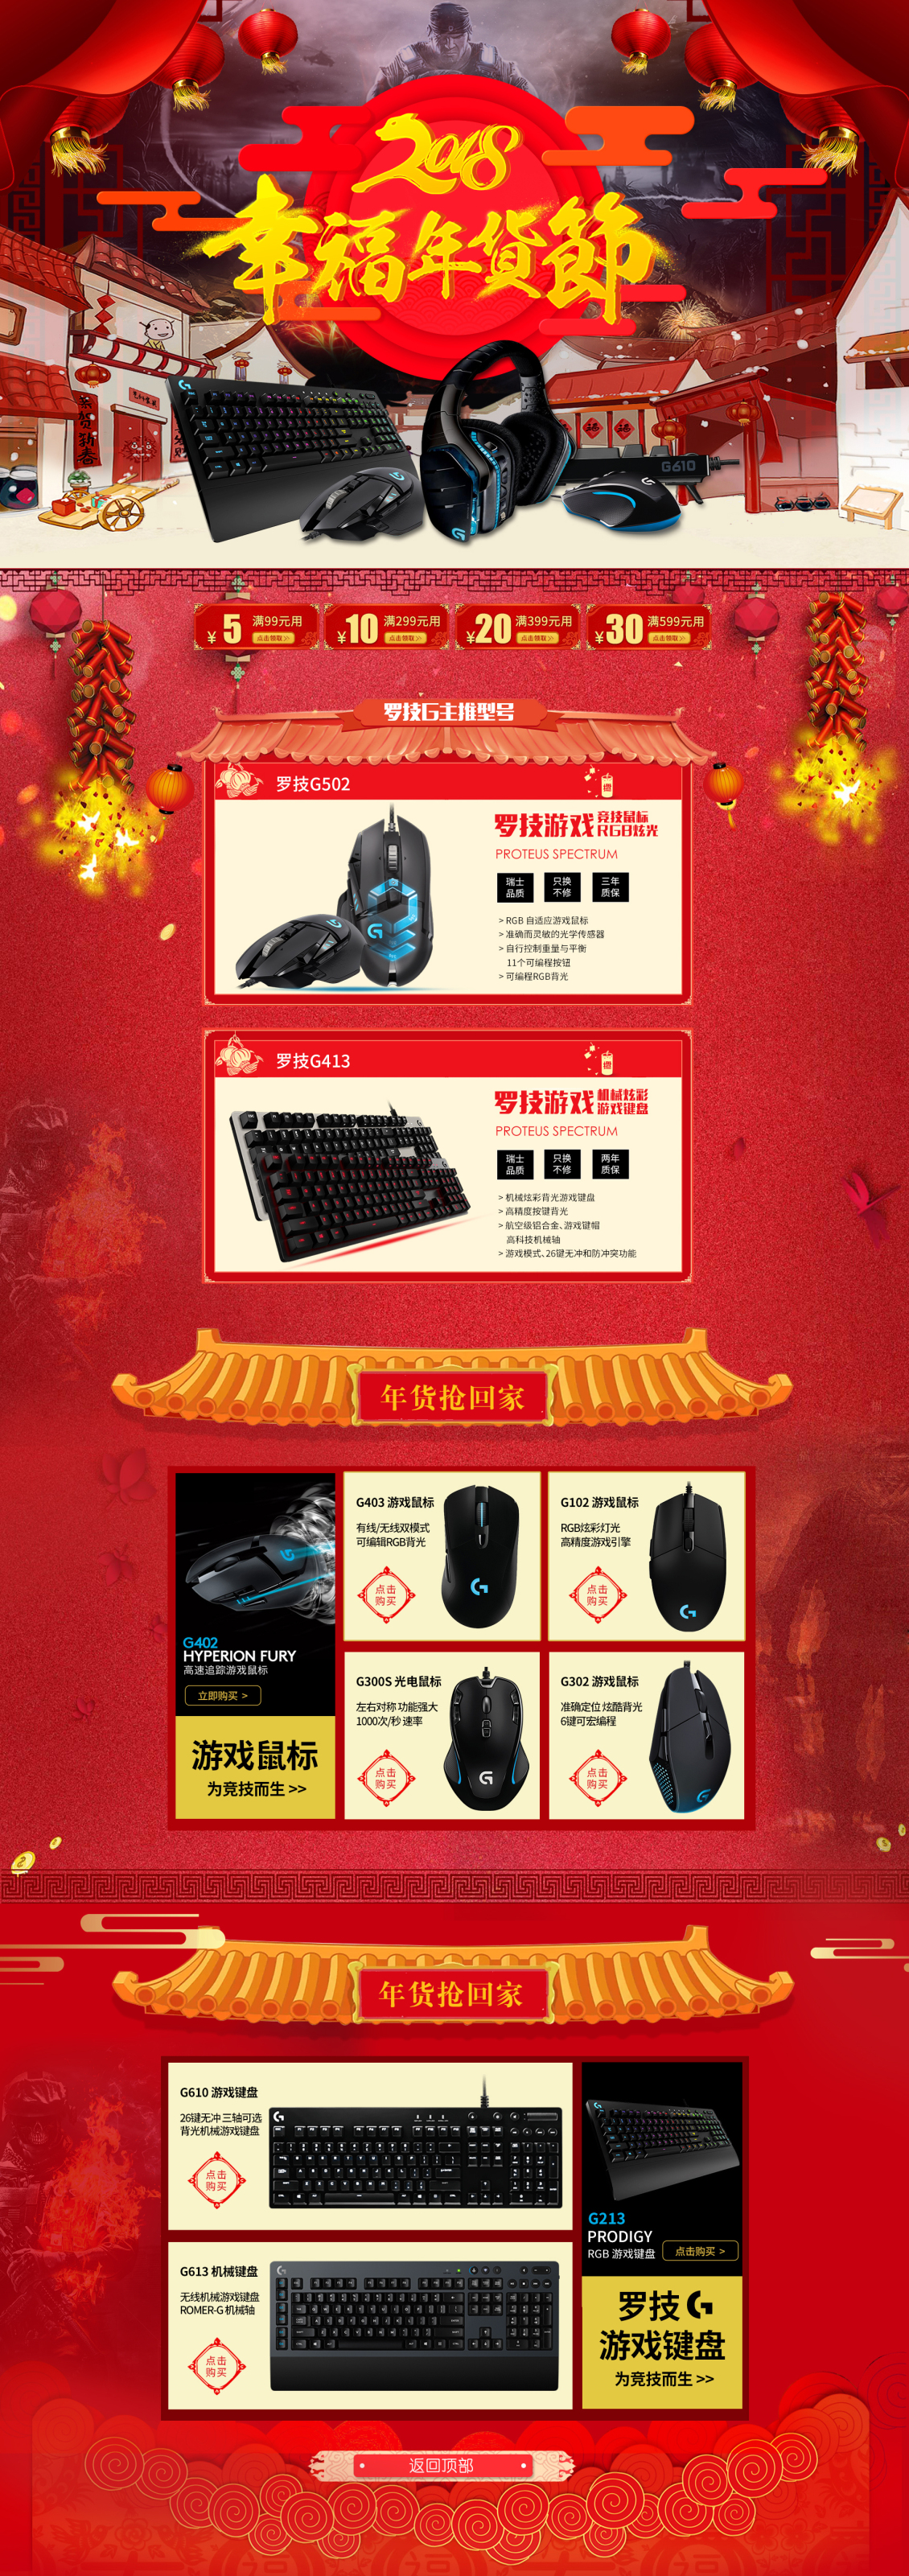 淘宝美工沐槿新年数码游戏键盘鼠标首页设计作品